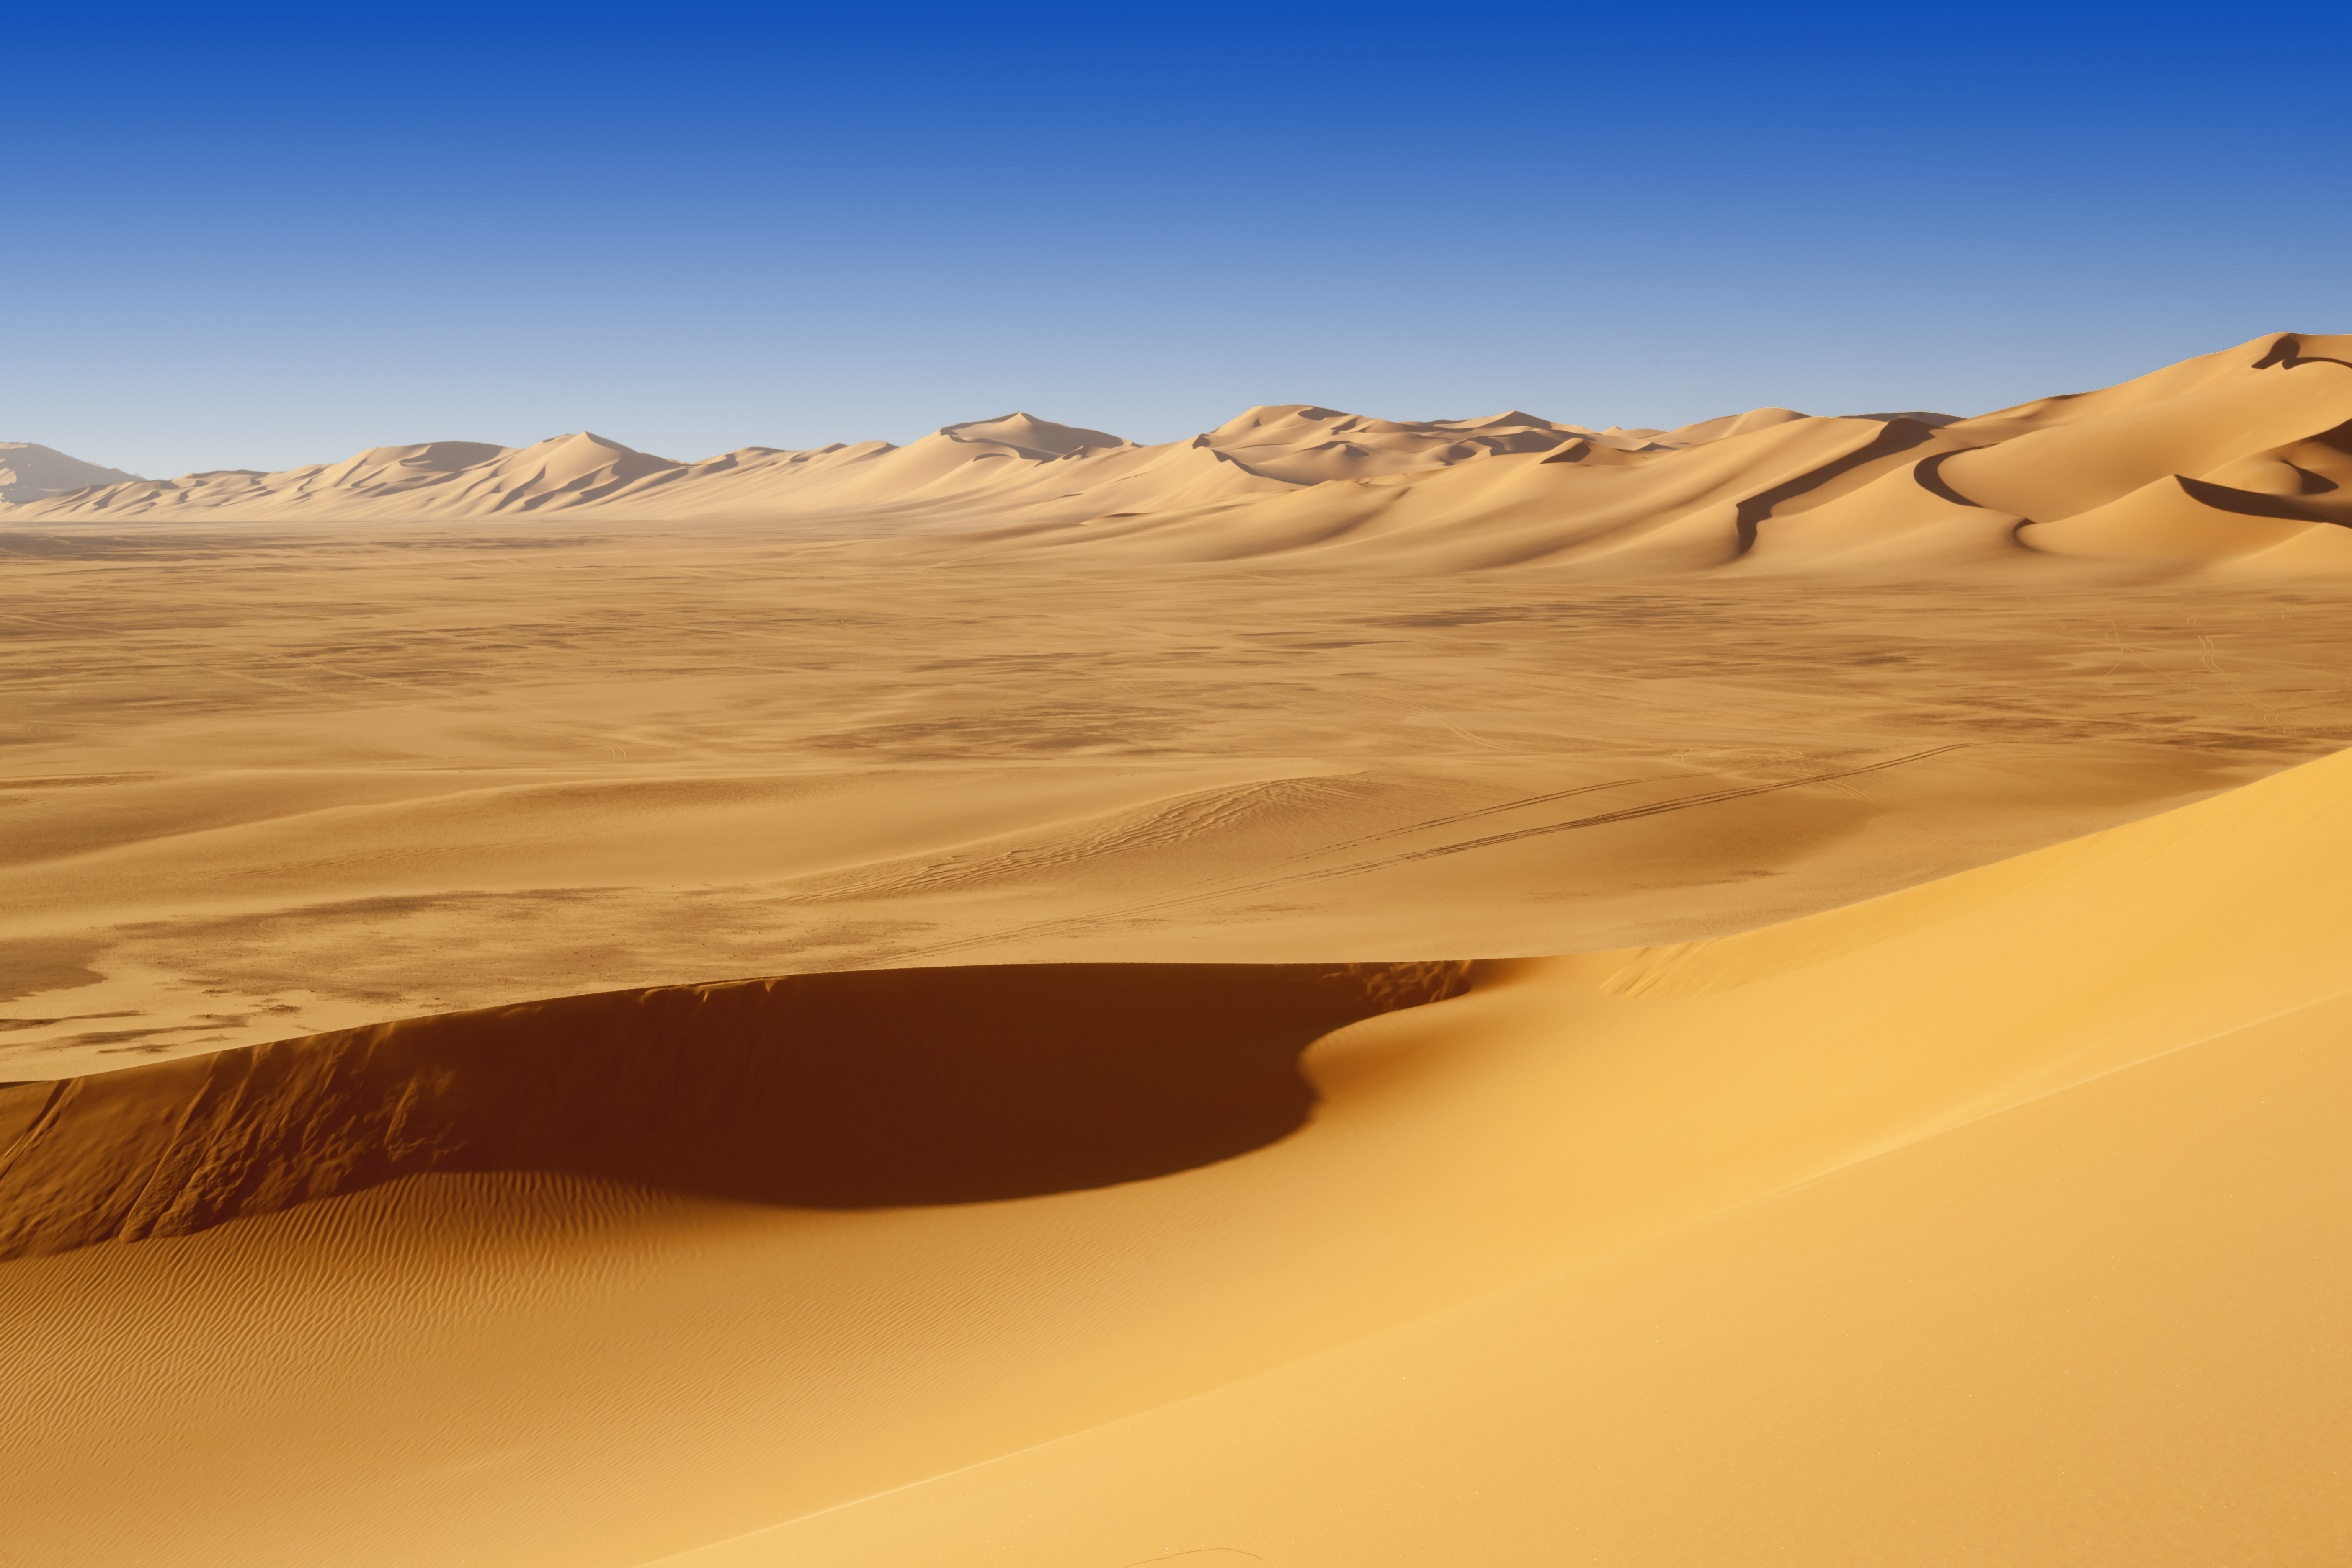 Sand Dunes at Sunset in the Sahara Desert, Libya